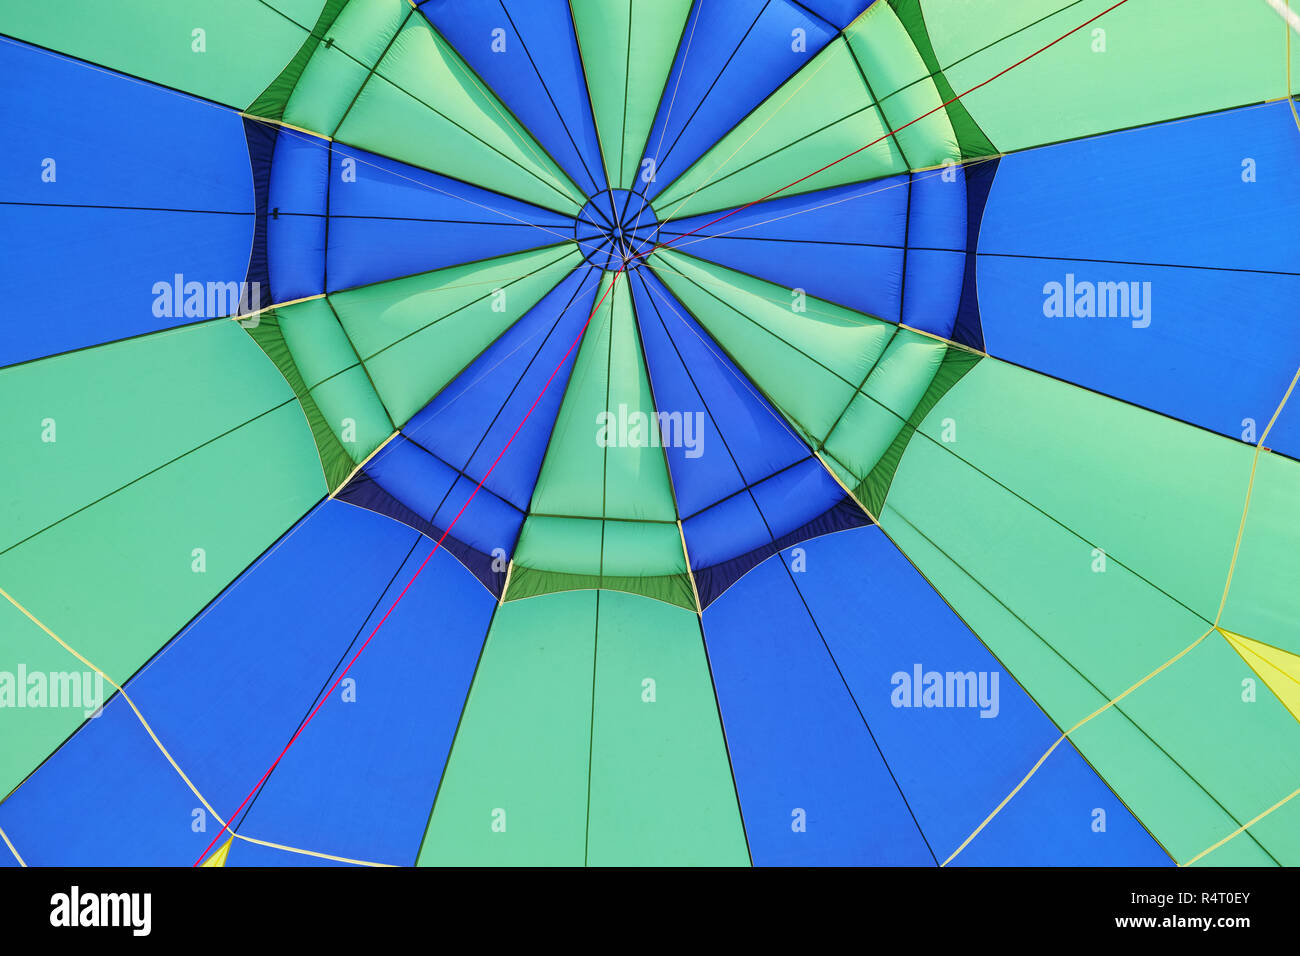 L'intérieur d'un ballon à air chaud, symétries et couleurs Banque D'Images